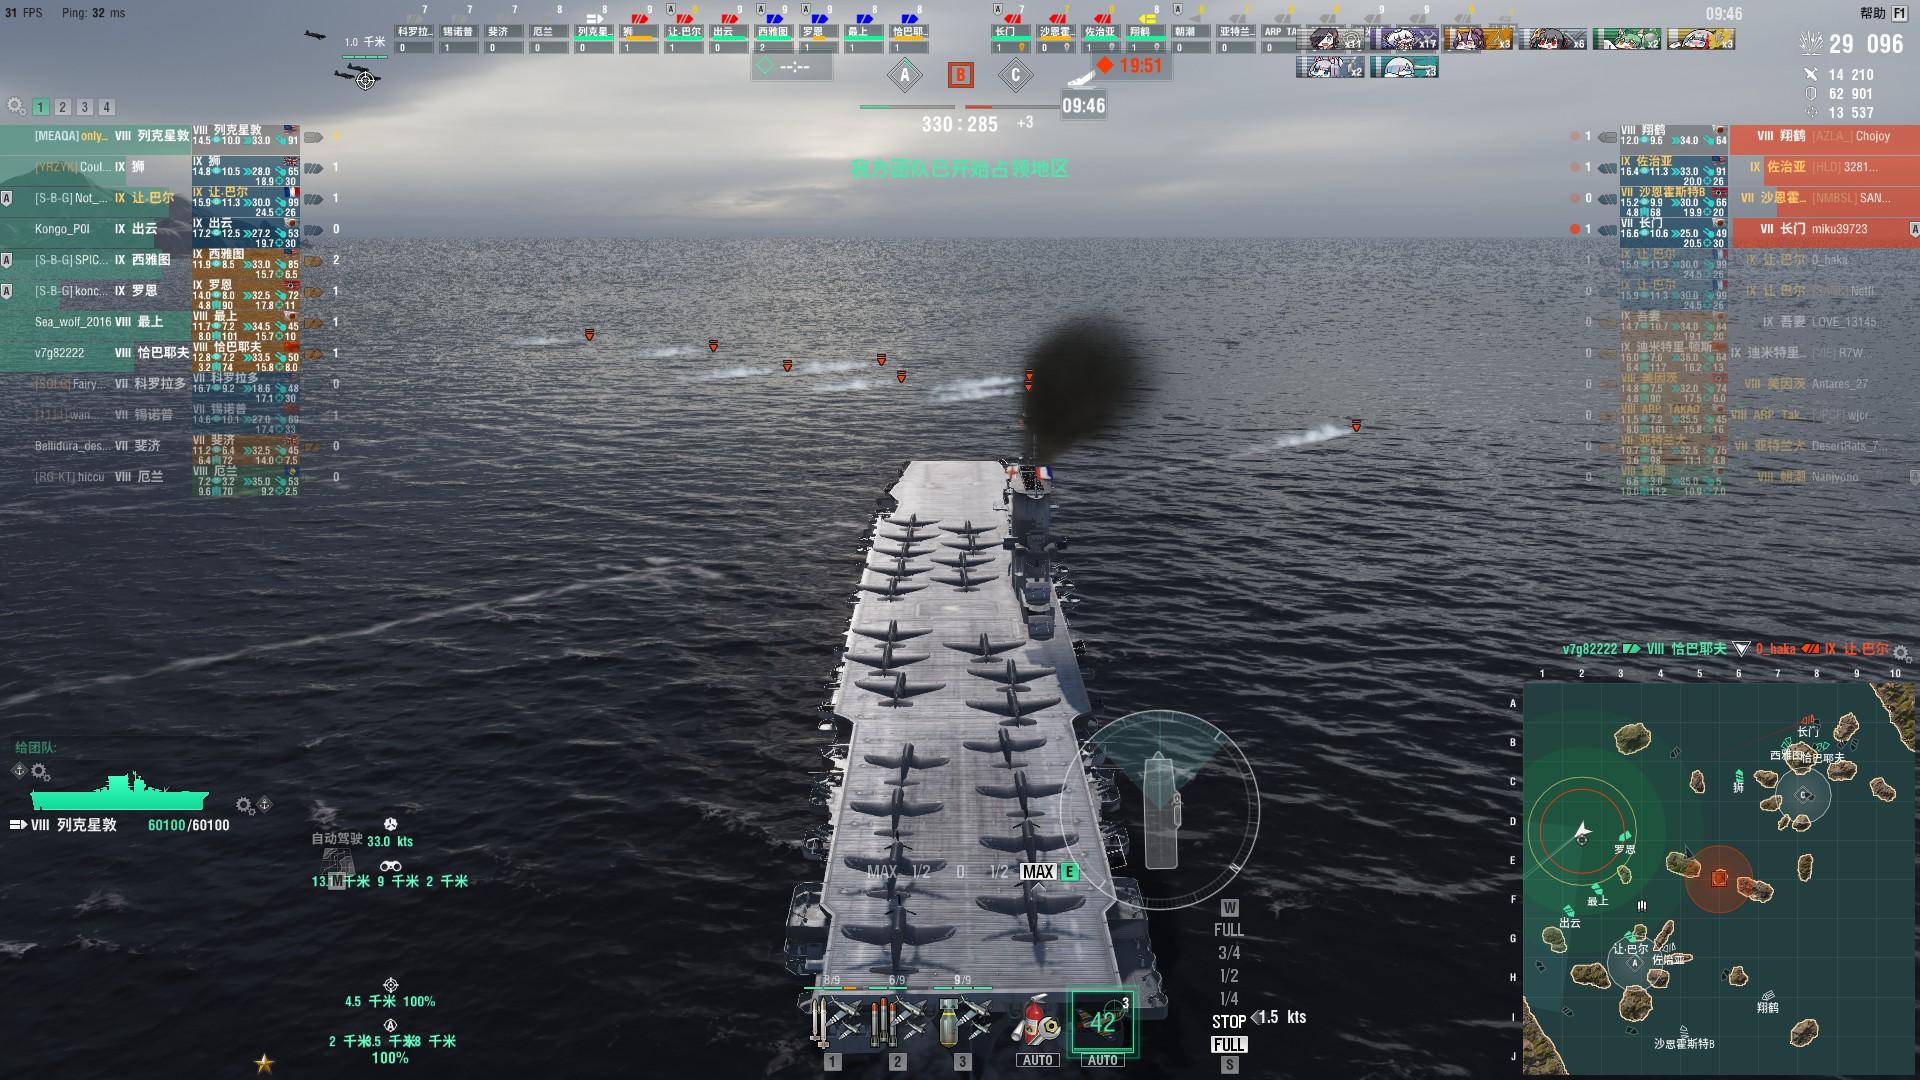 world of warships aslains causing crashing